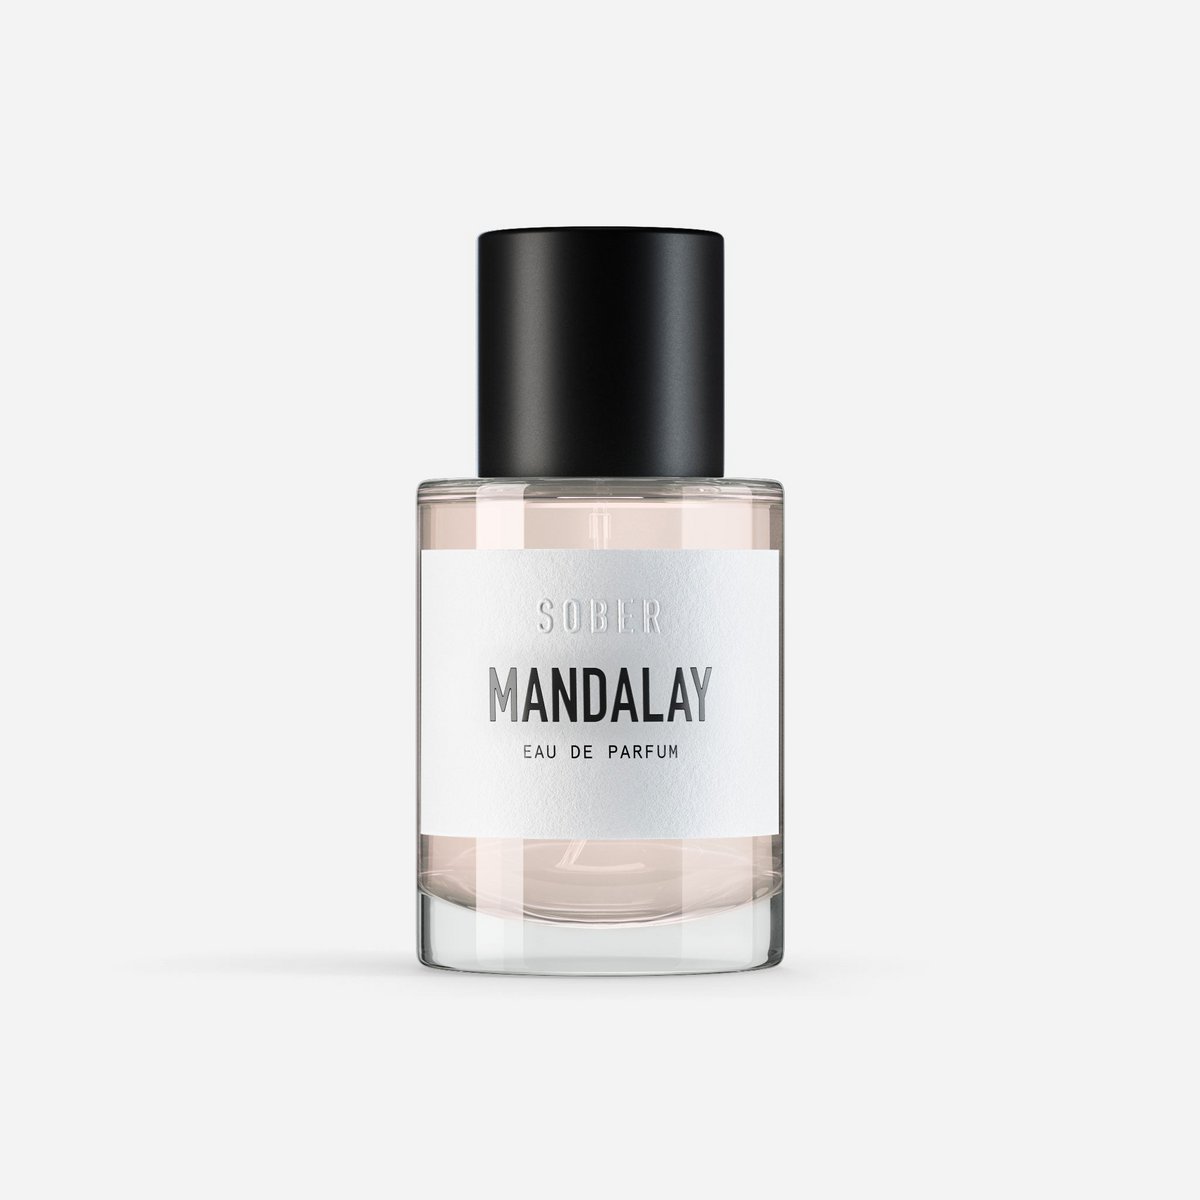 MANDALAY - Eau de Parfum